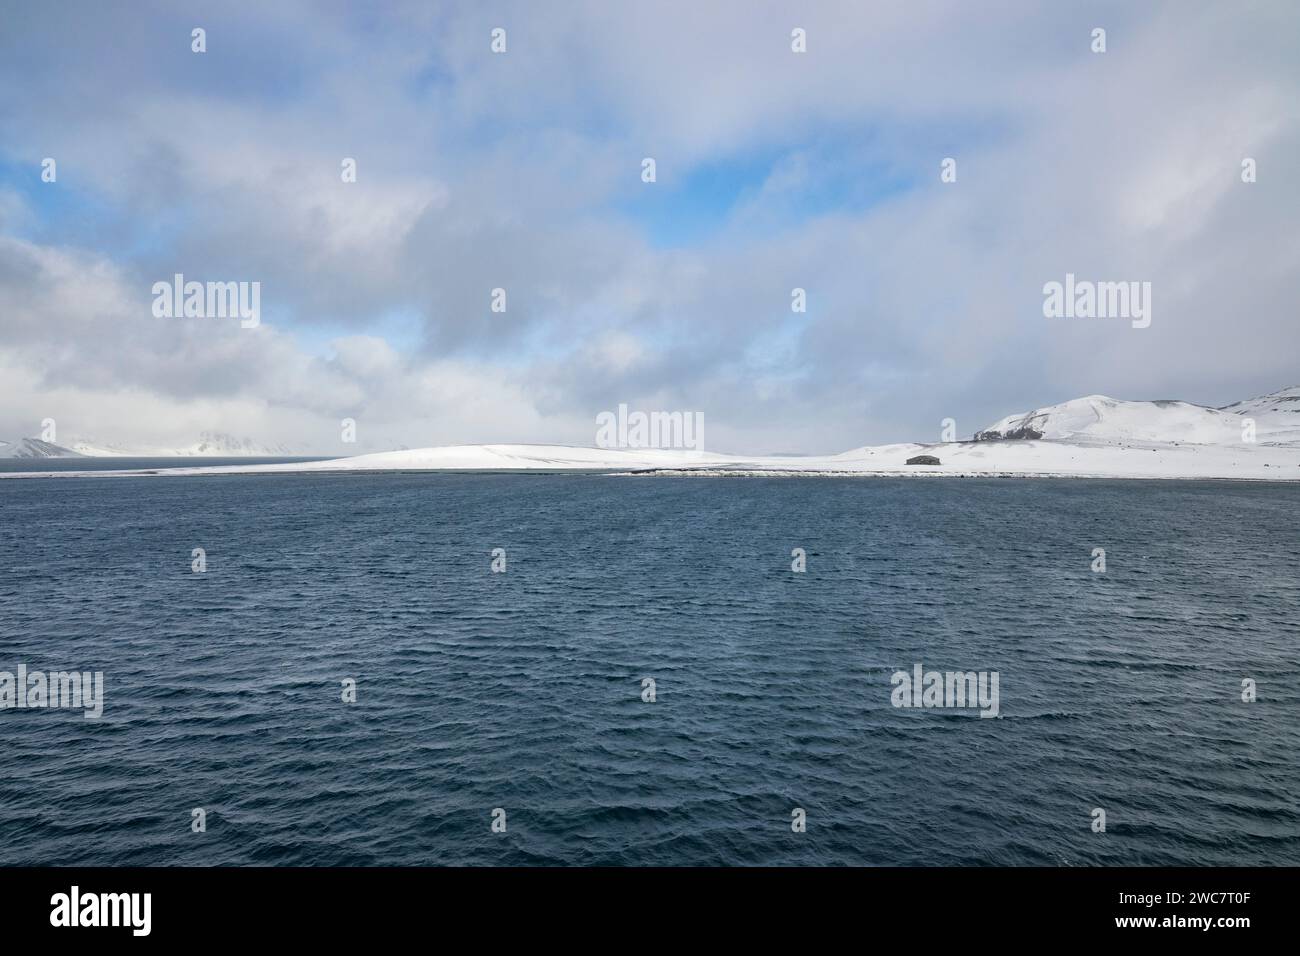 Isla de decepción, Islas Shetland del Sur, puerto natural seguro, en la caldera de un volcán activo, ruinas de una estación ballenera, remoto y aislado Foto de stock